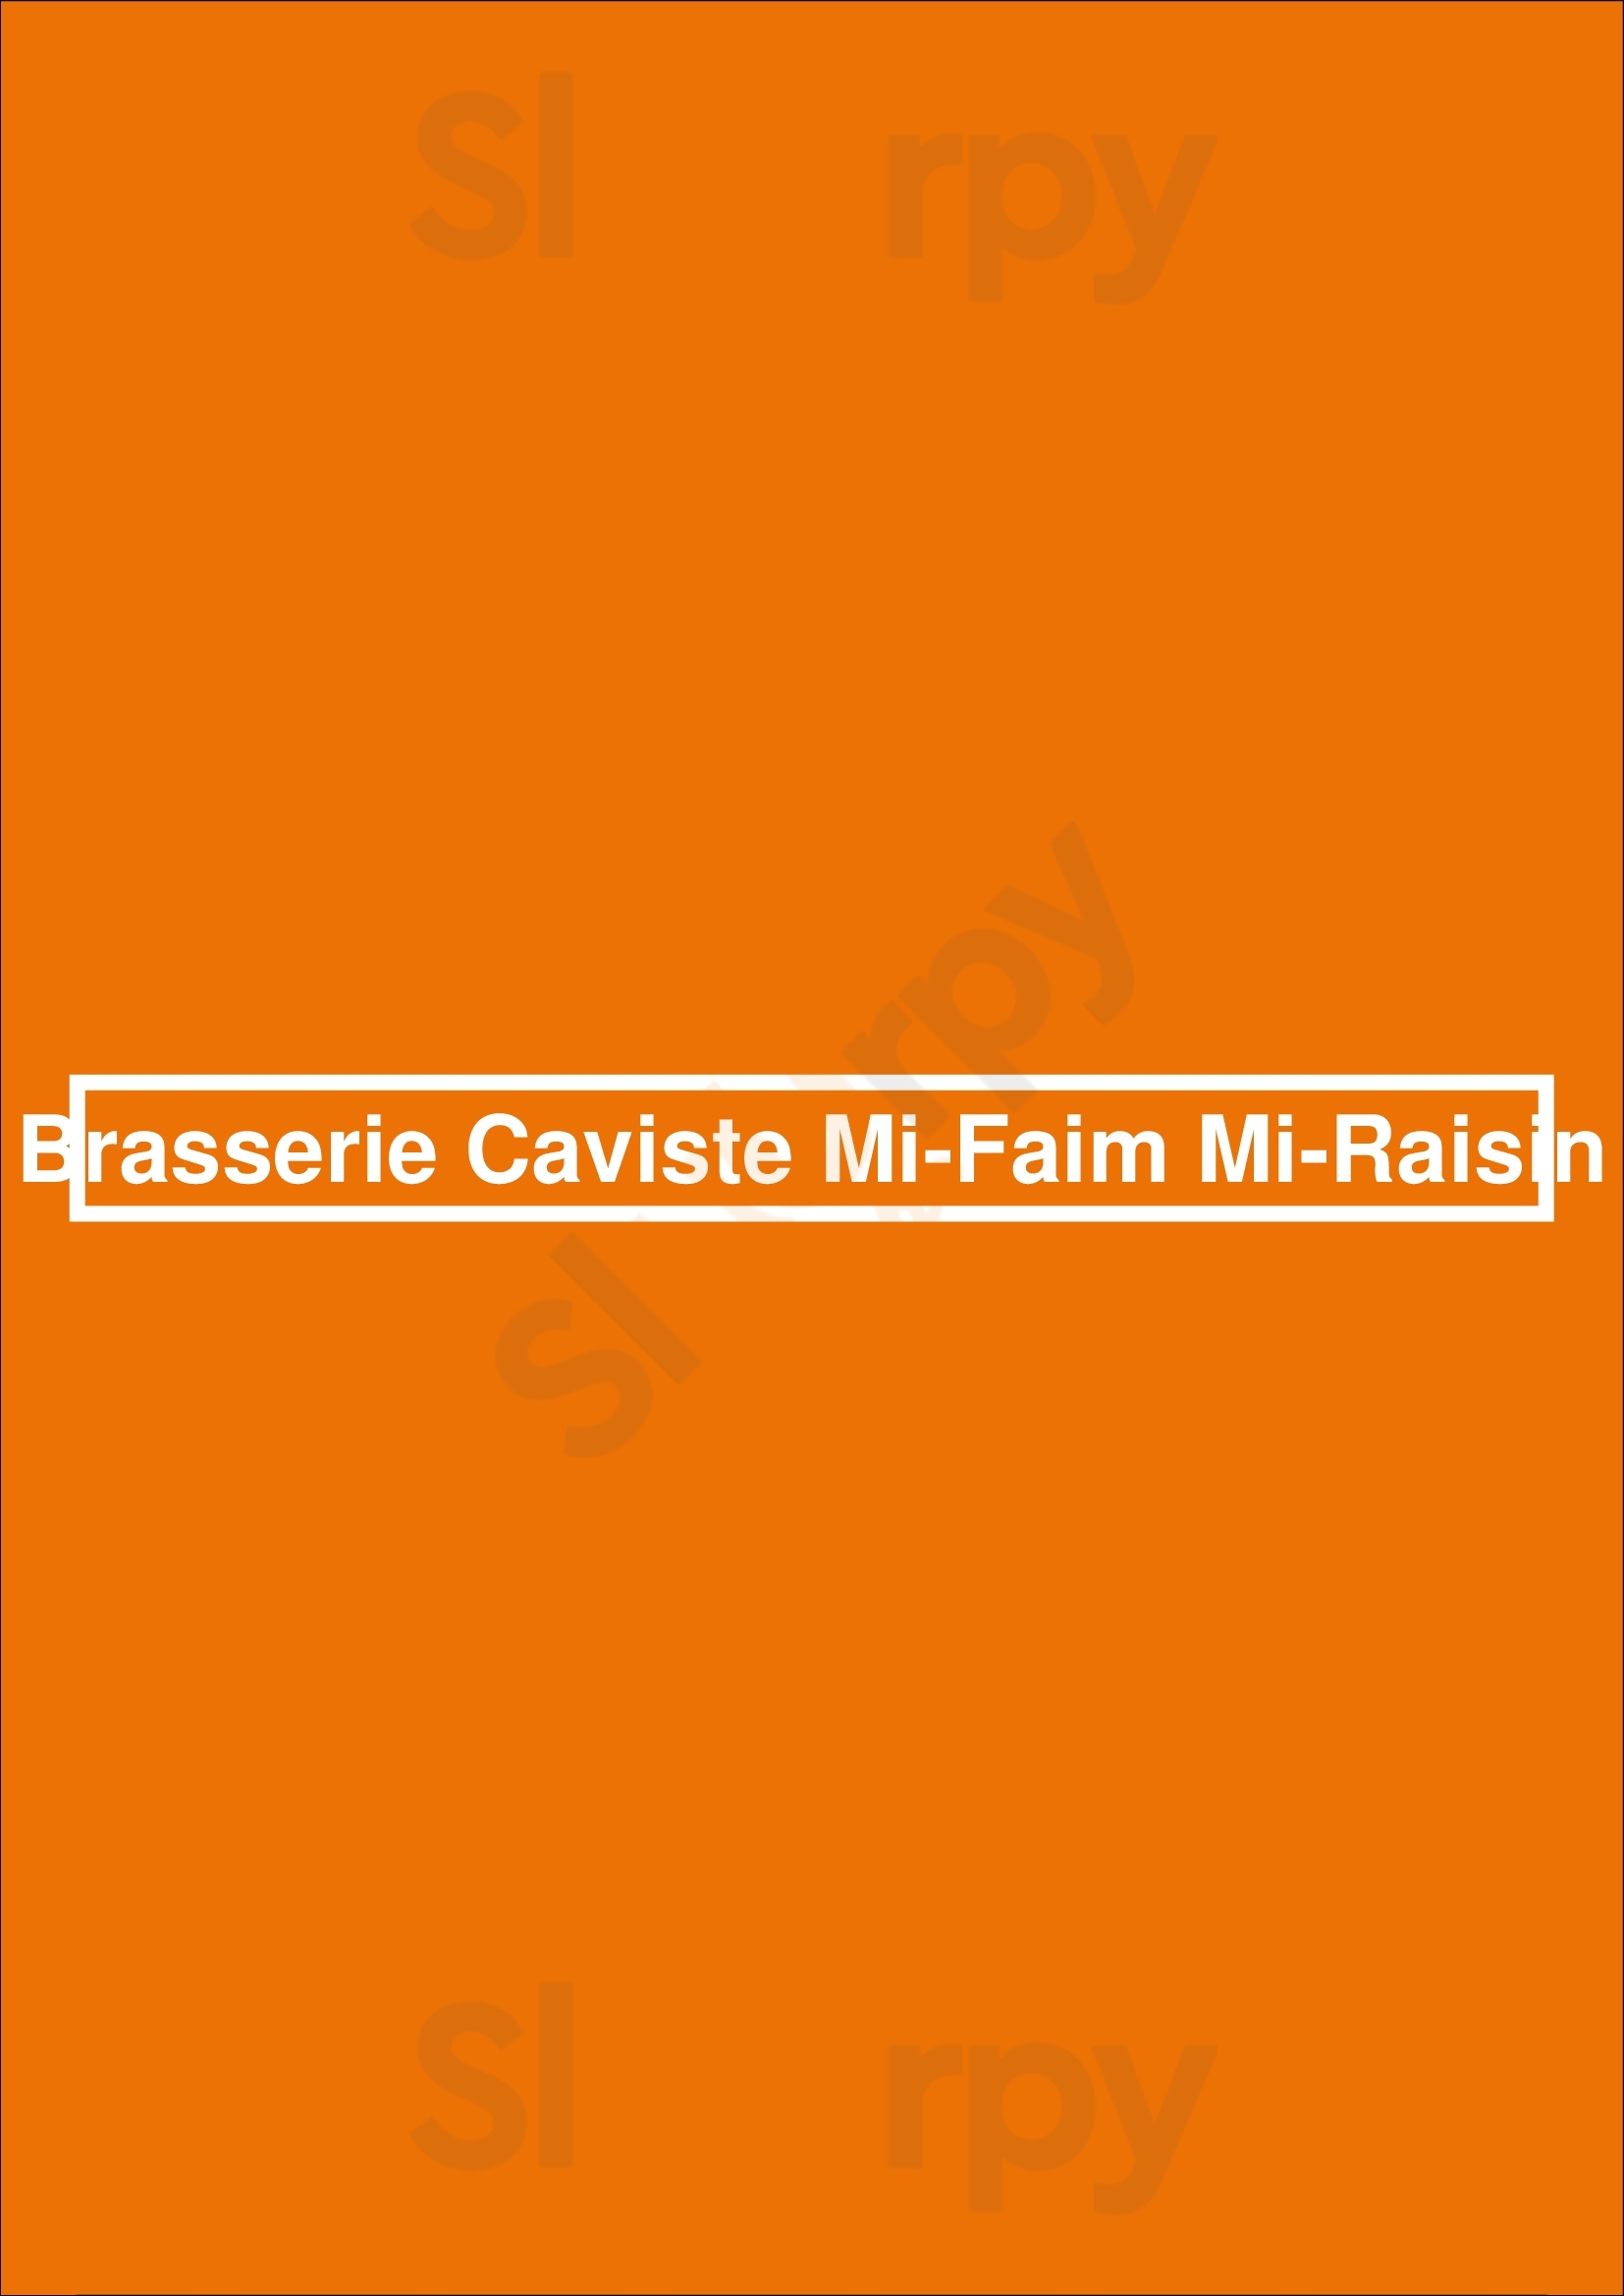 Brasserie Caviste Mi-faim Mi-raisin Tours Tours Menu - 1